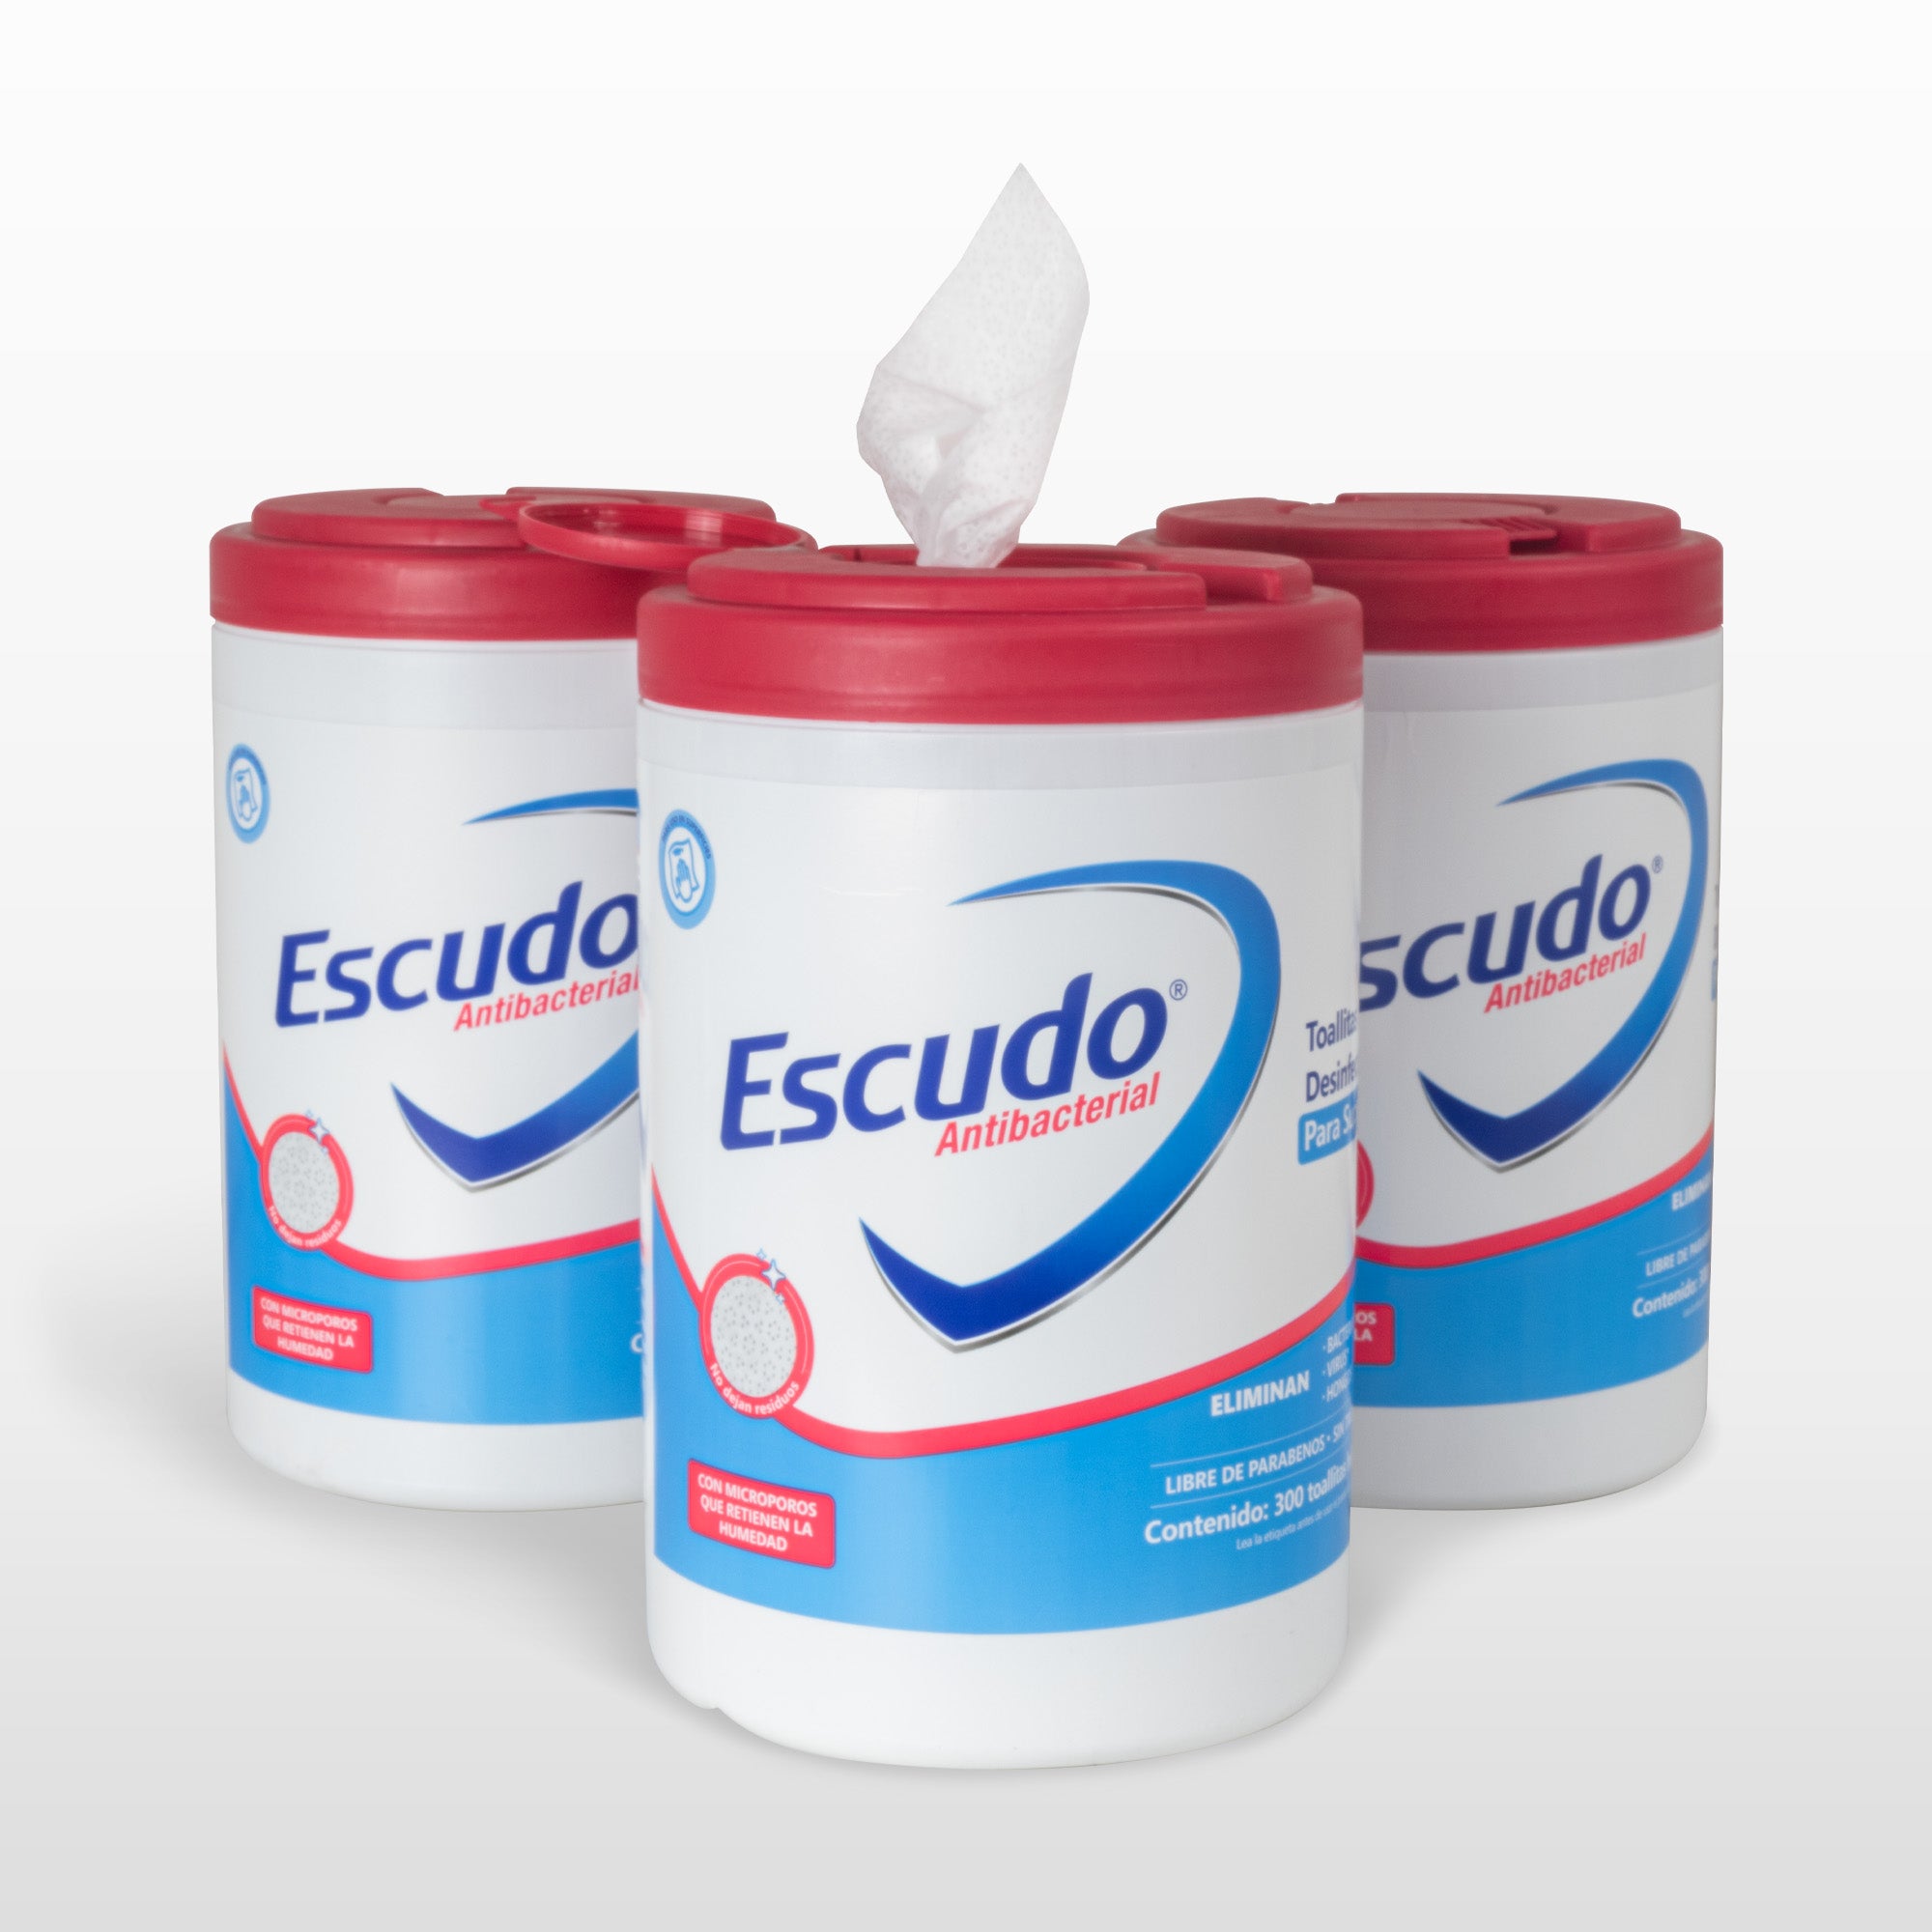 ESCUDO Toallitas Desinfectantes Bote de 6 x 7 Aroma Neutro - Toallitas  Sanitizantes y para Desinfección de Superficies - 360RX9